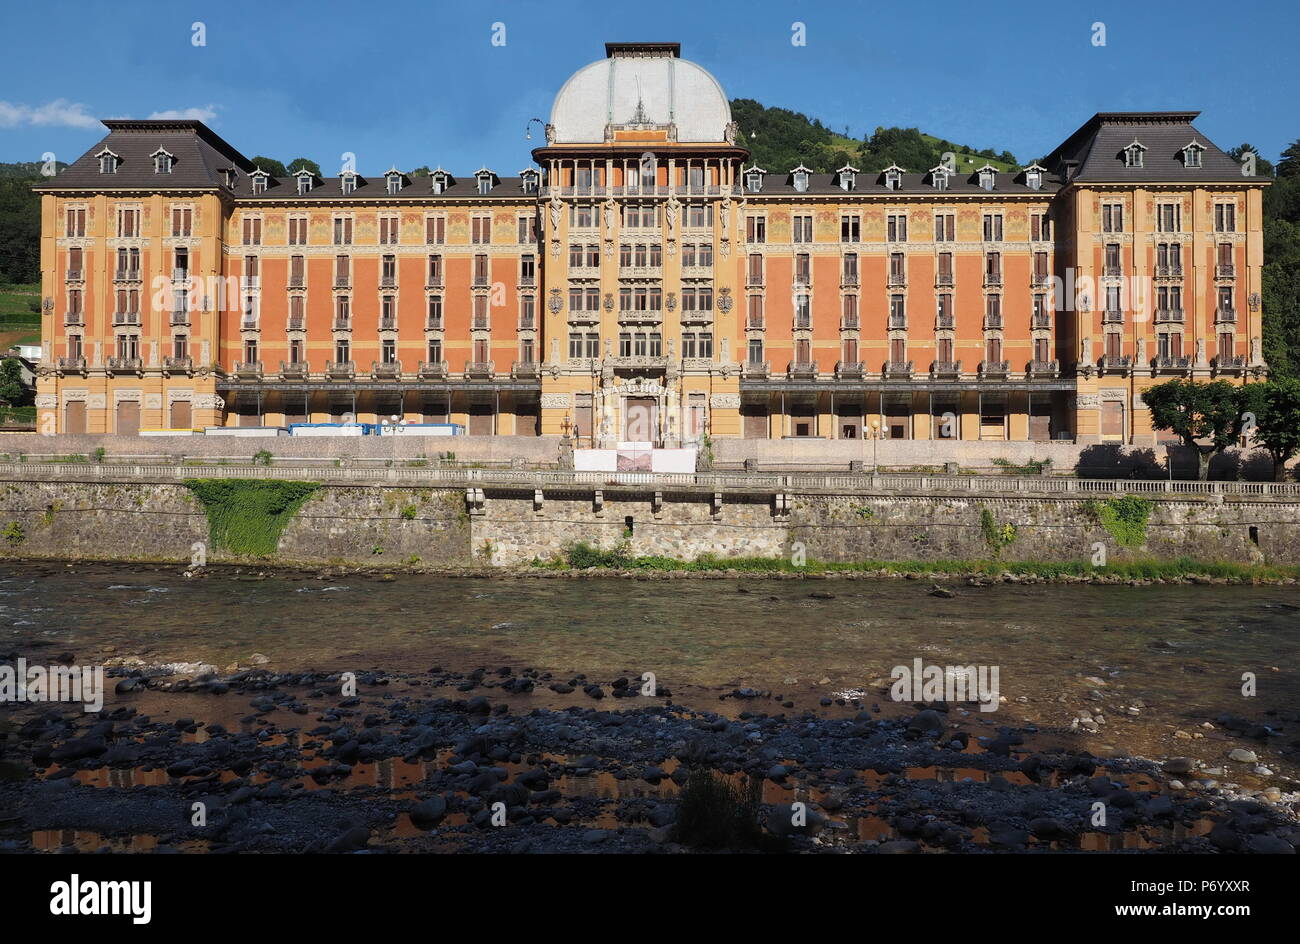 San Pellegrino Terme, Bergamo, Italia - 30 Giugno 2018: Grand Hotel in stile liberty in fase di ristrutturazione, dettagli facciata, windows Foto Stock